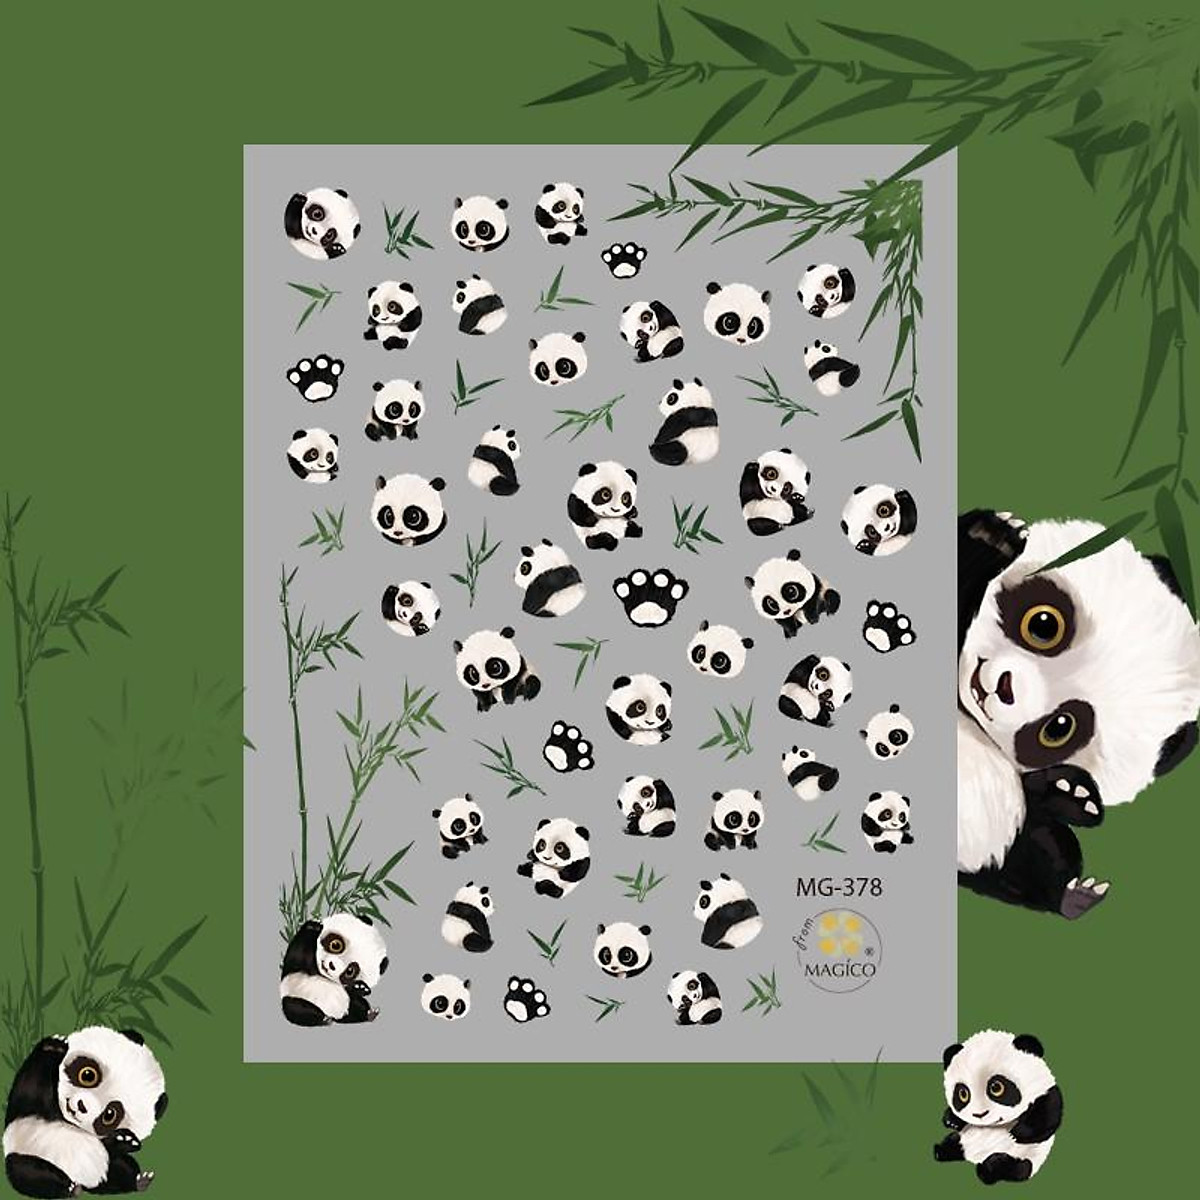 Tổng Hợp Hình Nền Gấu Trúc 3D Đẹp Nhất Hiện Nay, 3D Cute Panda Wallpapers